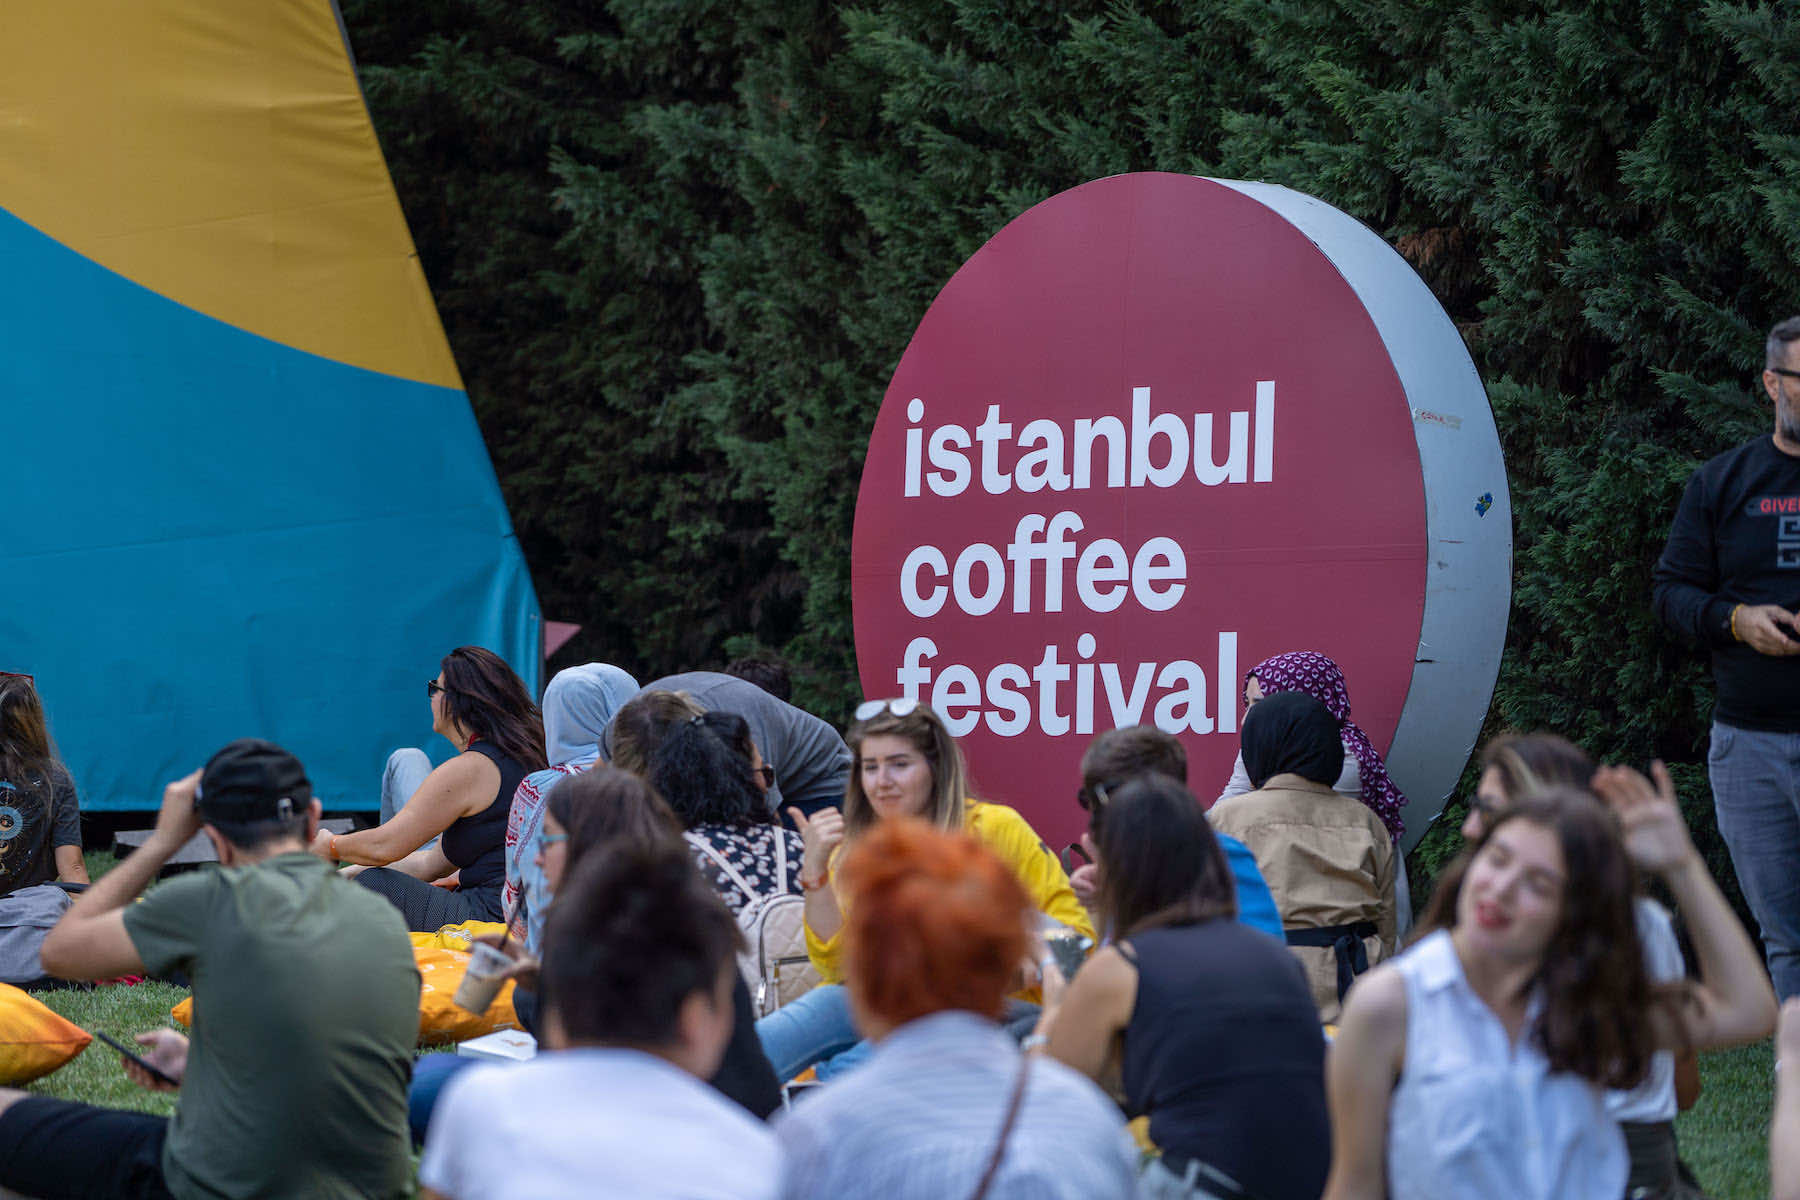 İstanbul Coffee Festival